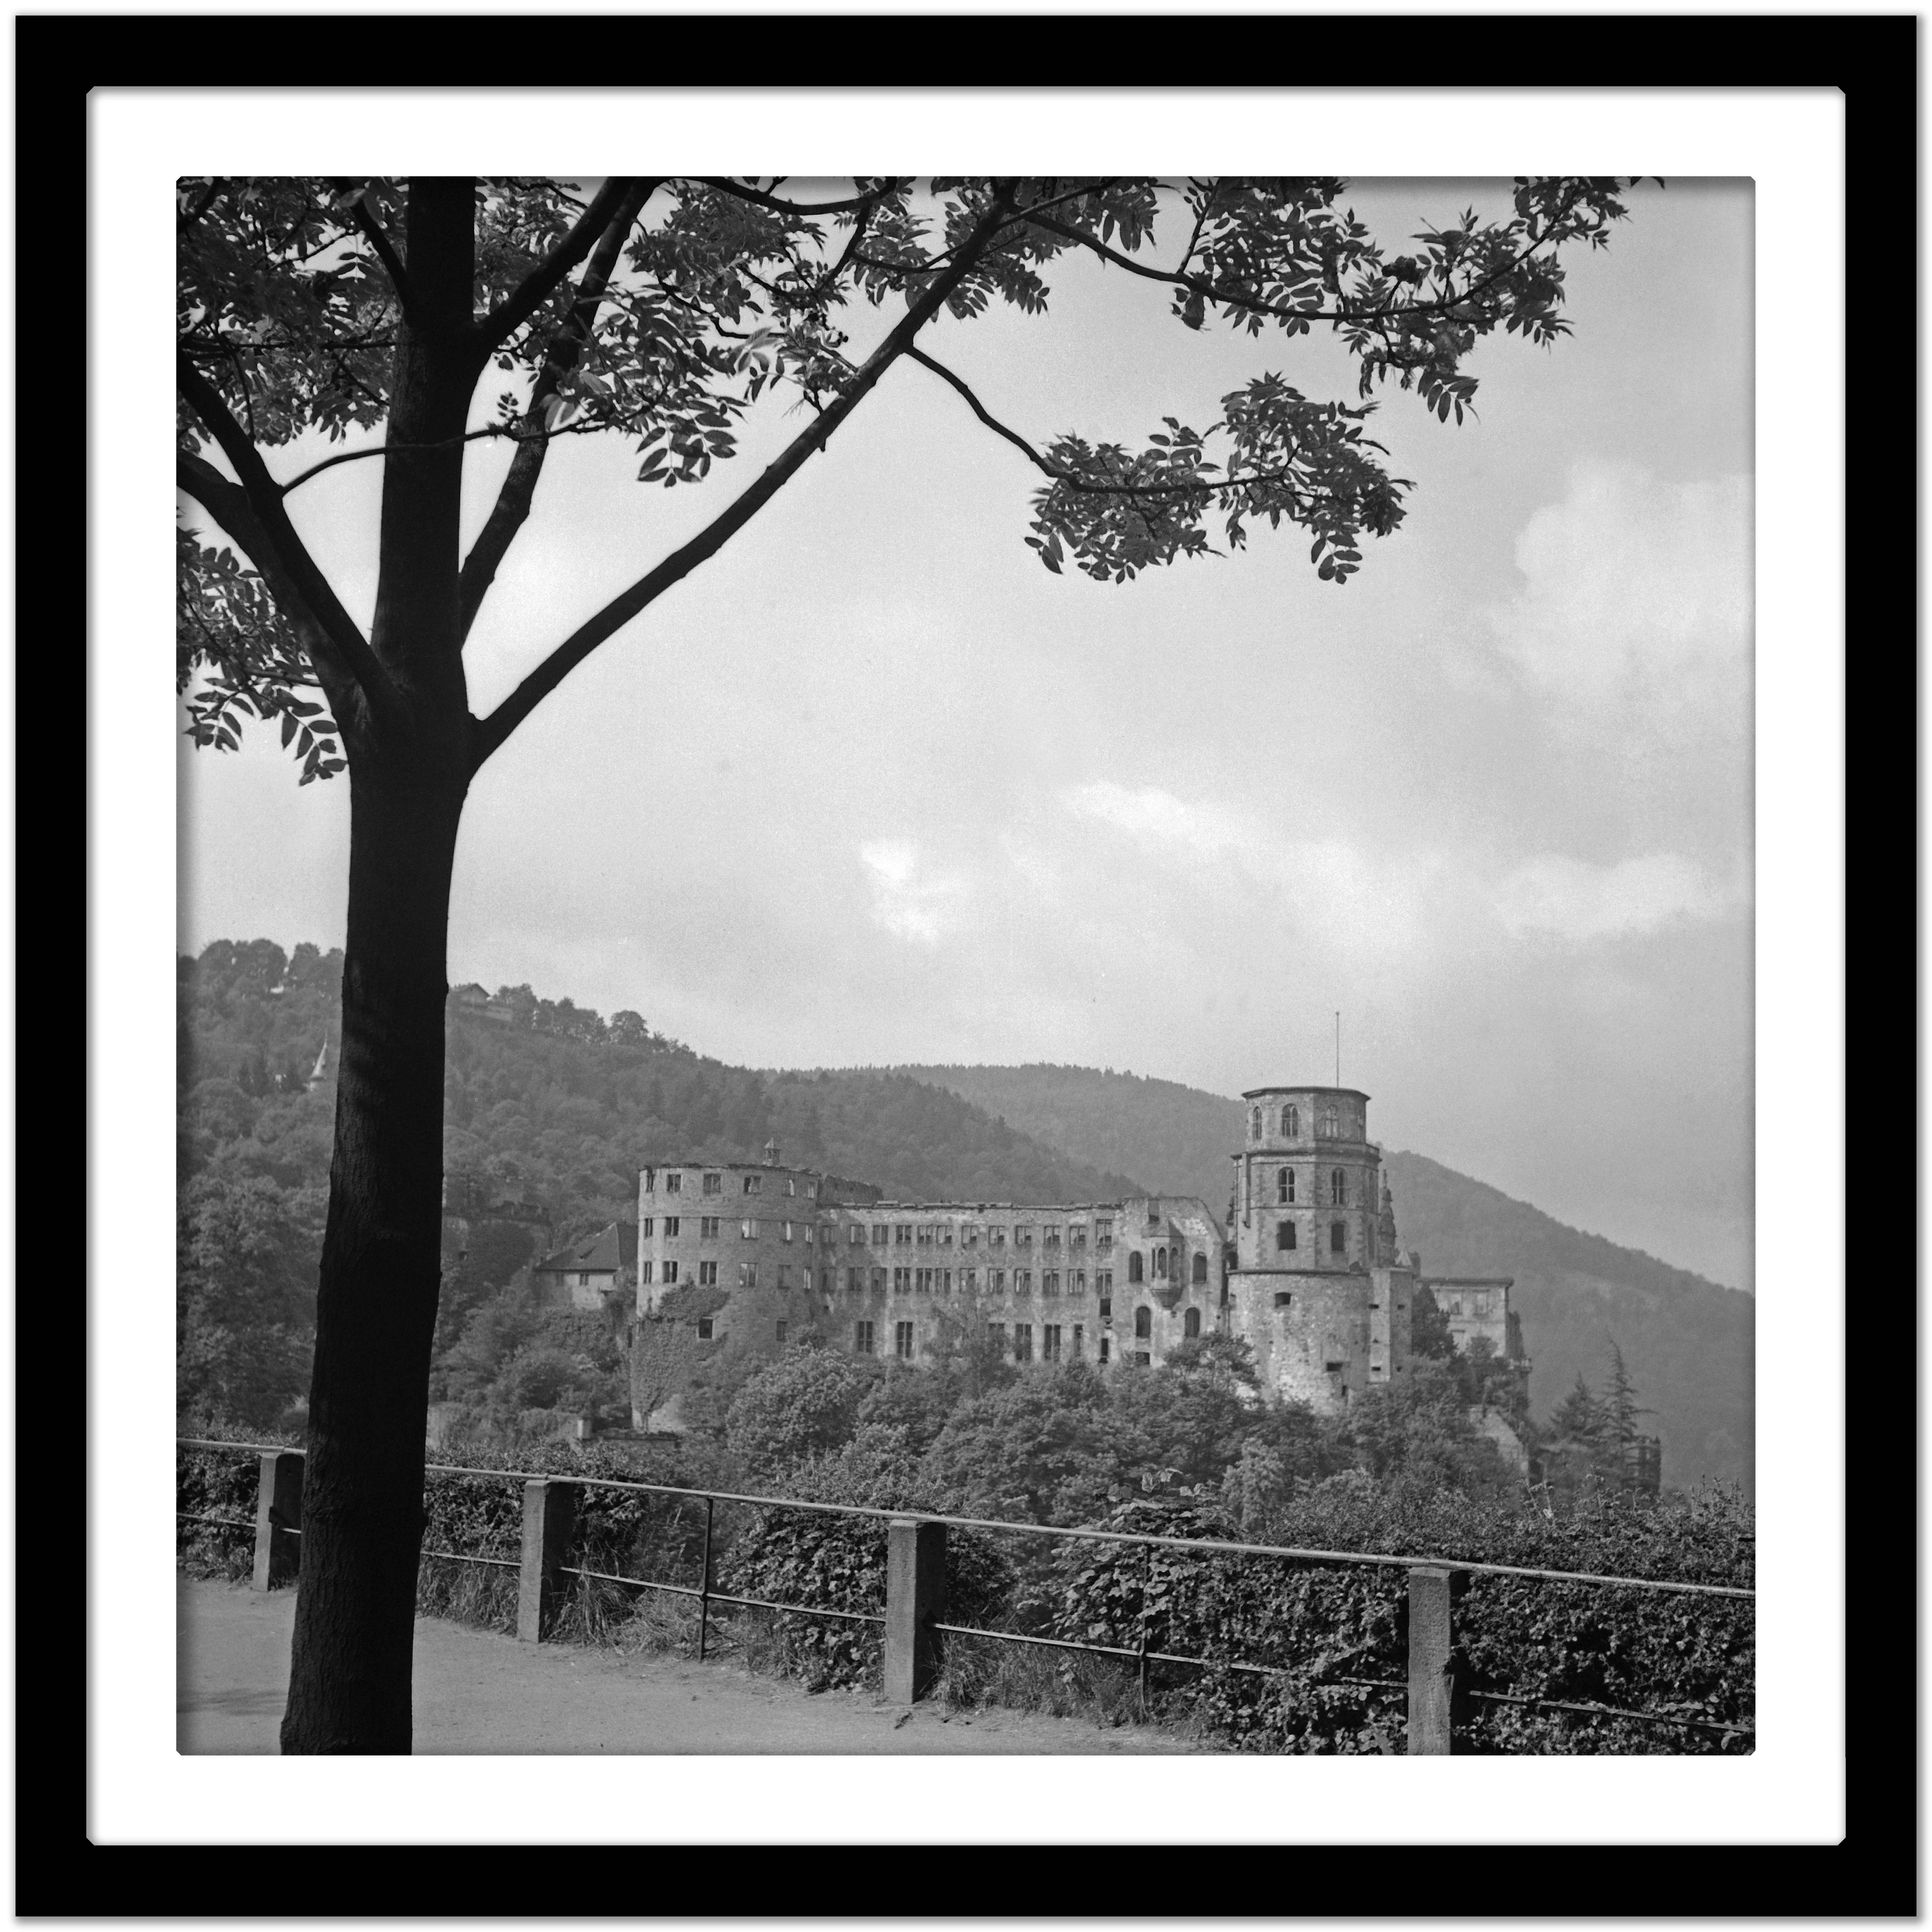 Grosse Scheffelterrasse-Terrassenterrace zum Schloss, Heidelberg, Deutschland 1938, bedruckt Später (Grau), Black and White Photograph, von Karl Heinrich Lämmel